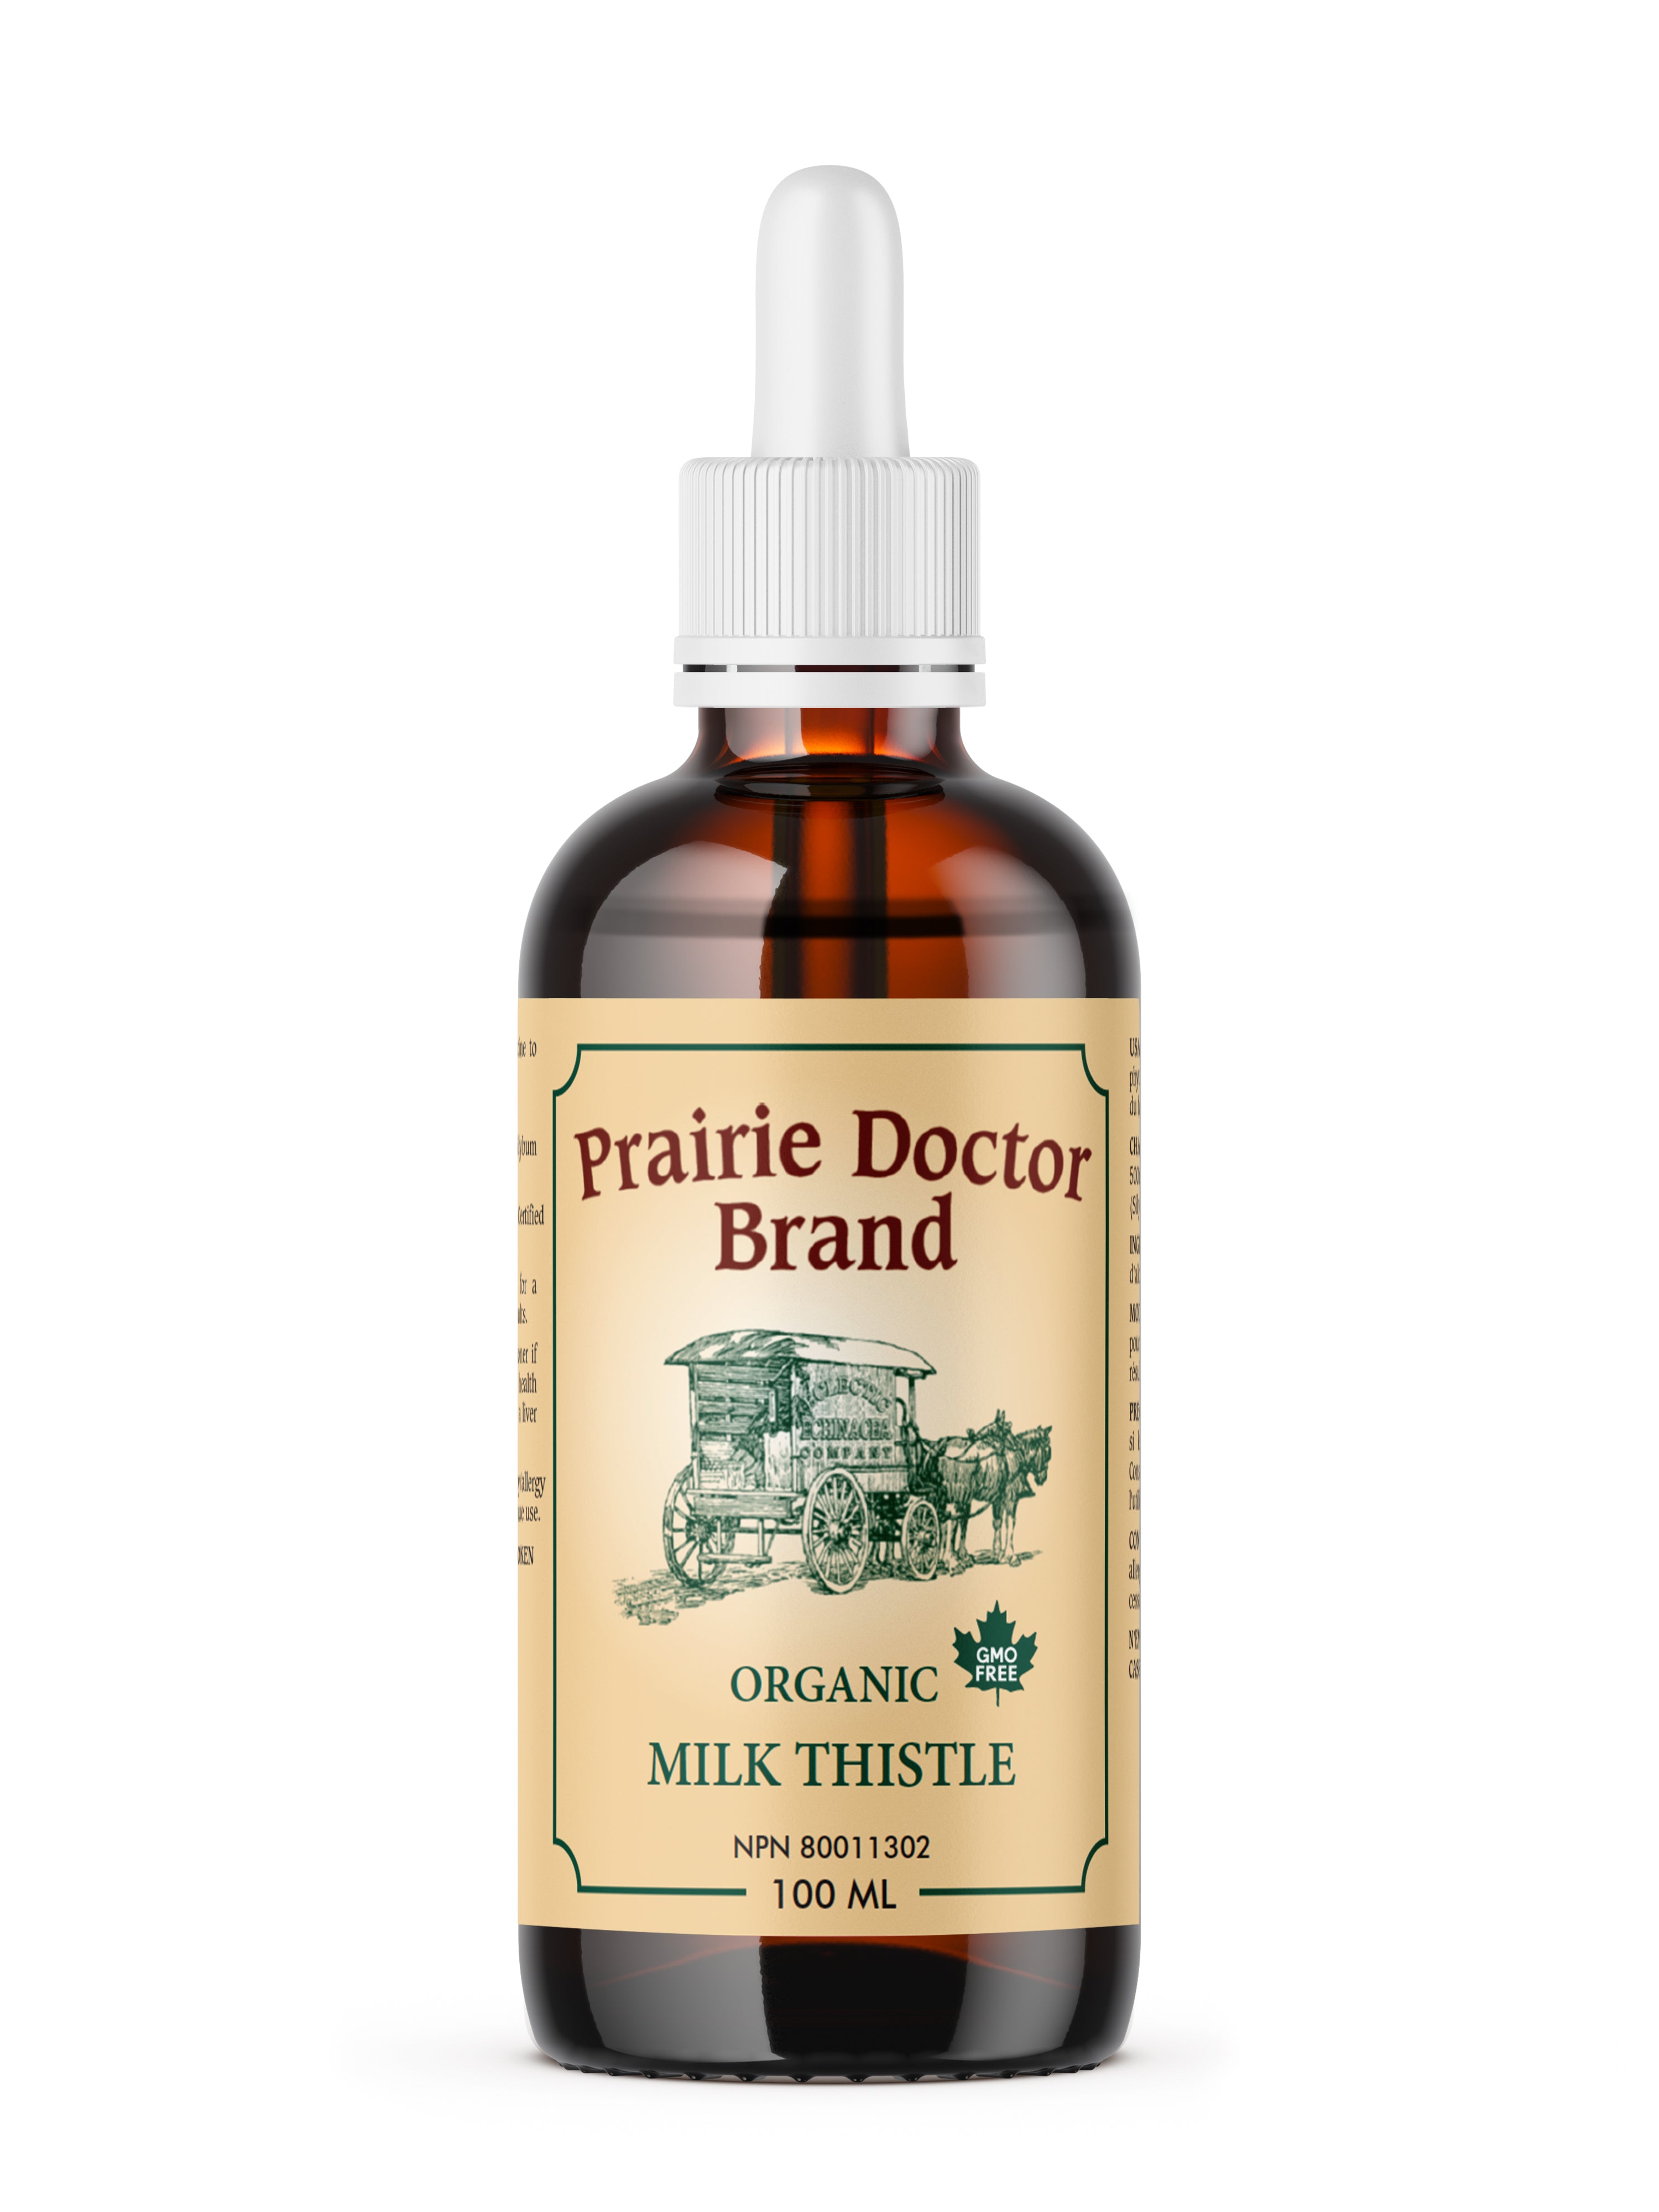 Prairie Doctor Milk Thistle (100ml) - Lifestyle Markets